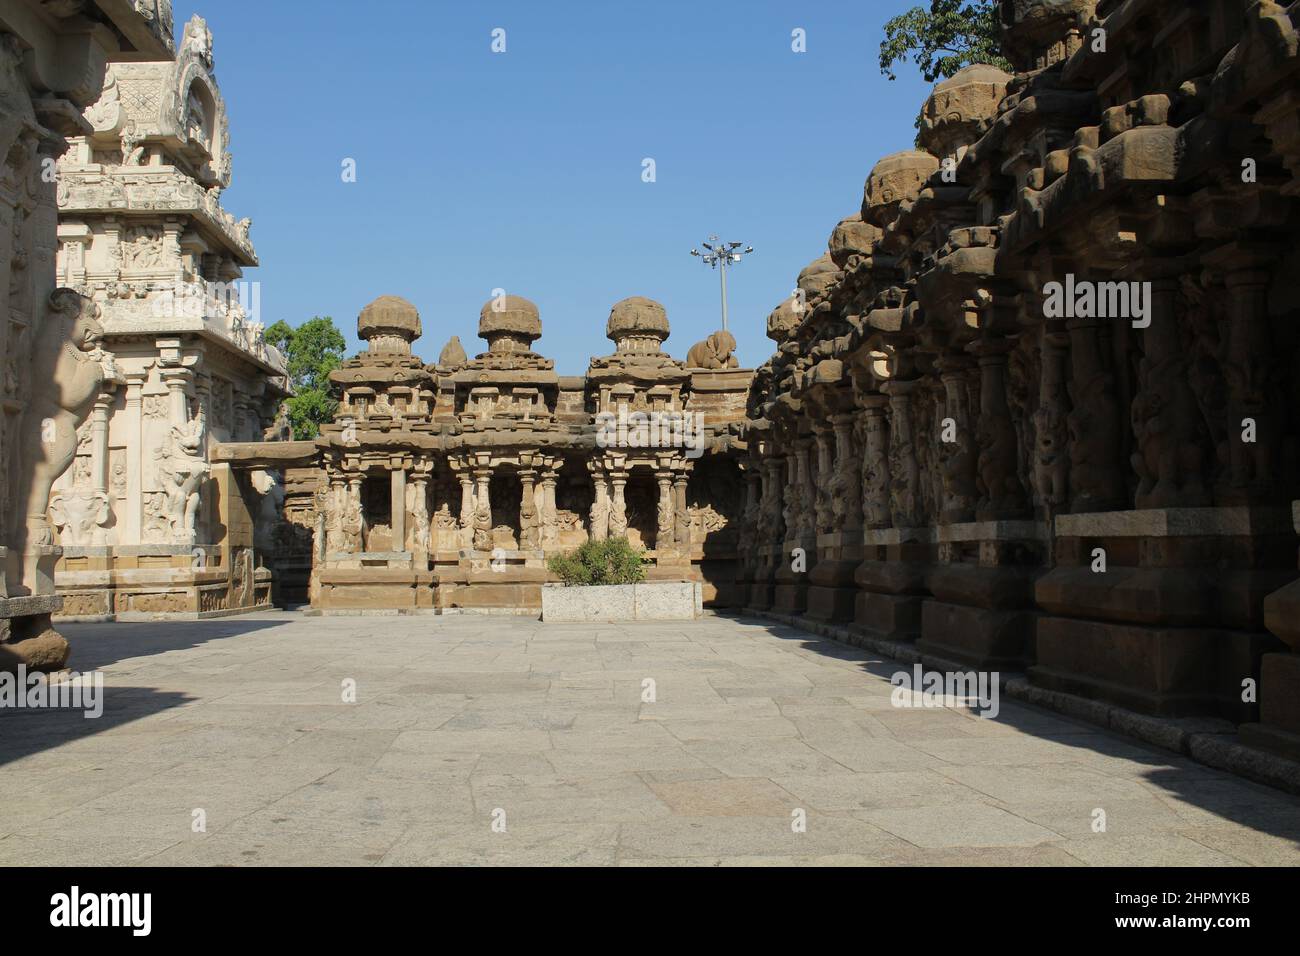 Le temple Kailasanathar, également appelé temple Kailasanatha, est un temple hindou historique de l'époque de Pallava à Kanchipuram, au Tamil Nadu. Dédié à Shiva, c'est l'un des plus anciens monuments encore en vie à Kanchipuram. Inde. Banque D'Images